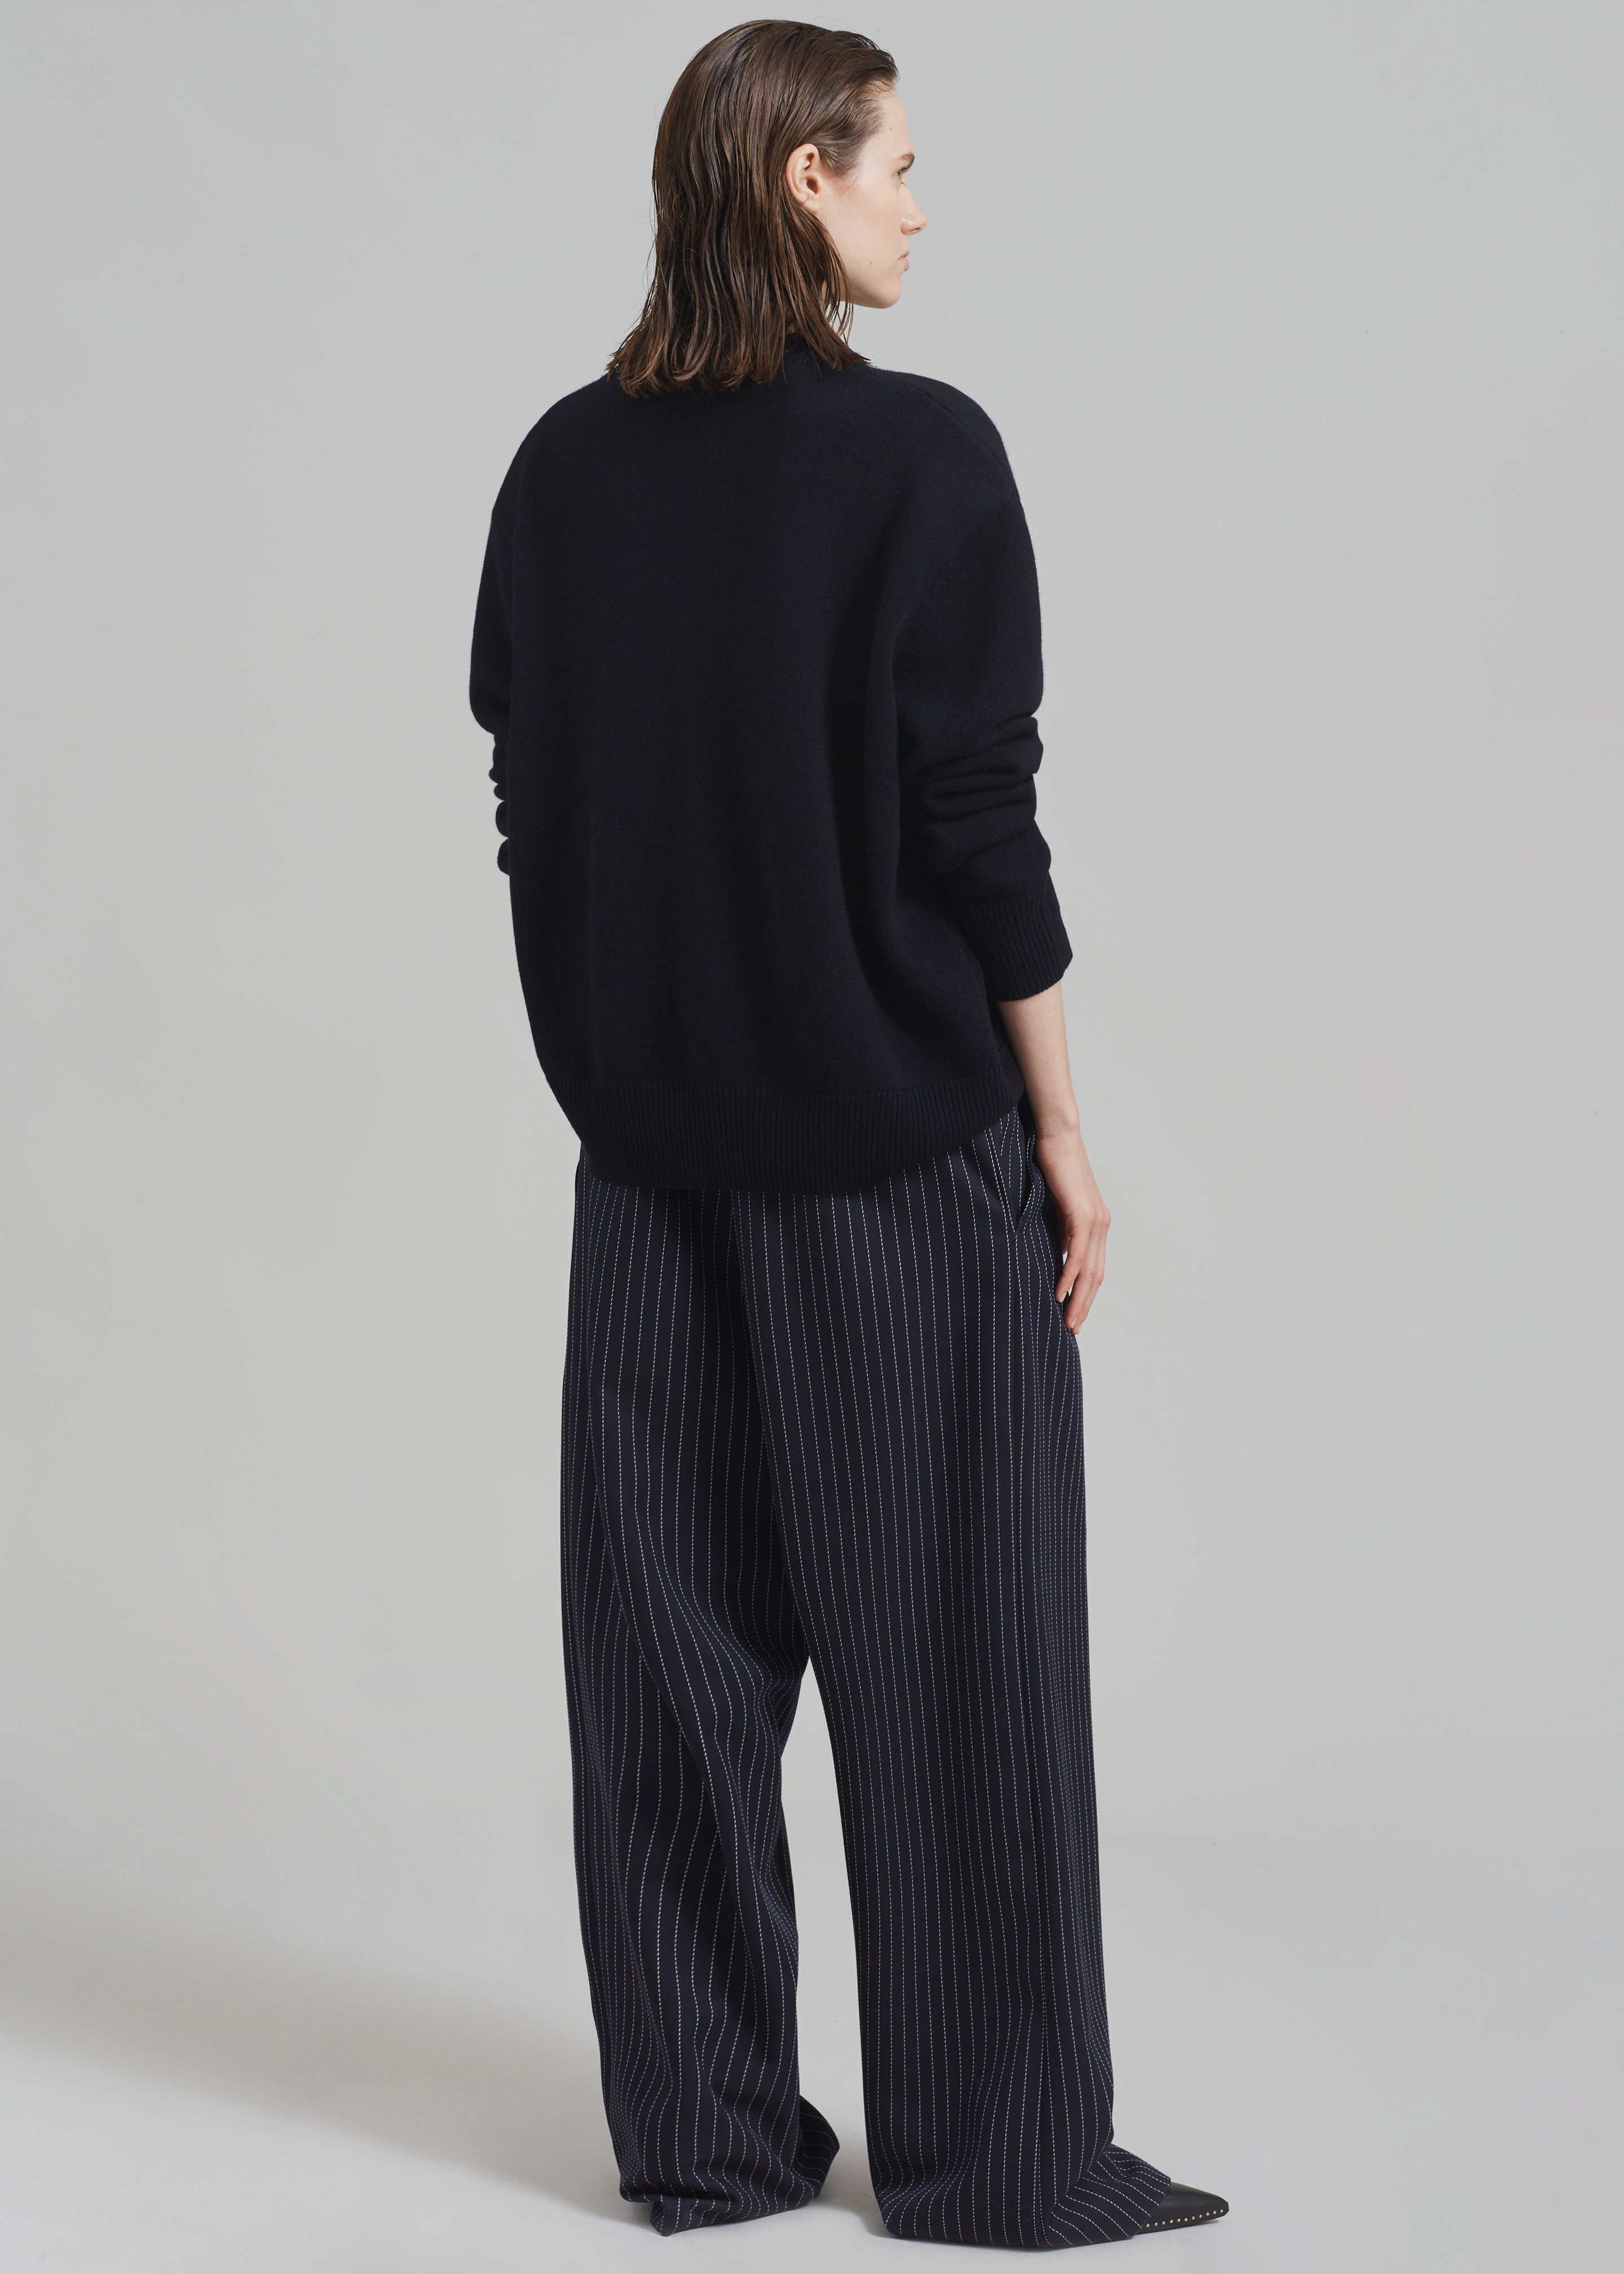 Rafaela Padded Knit Sweater - Black - 10